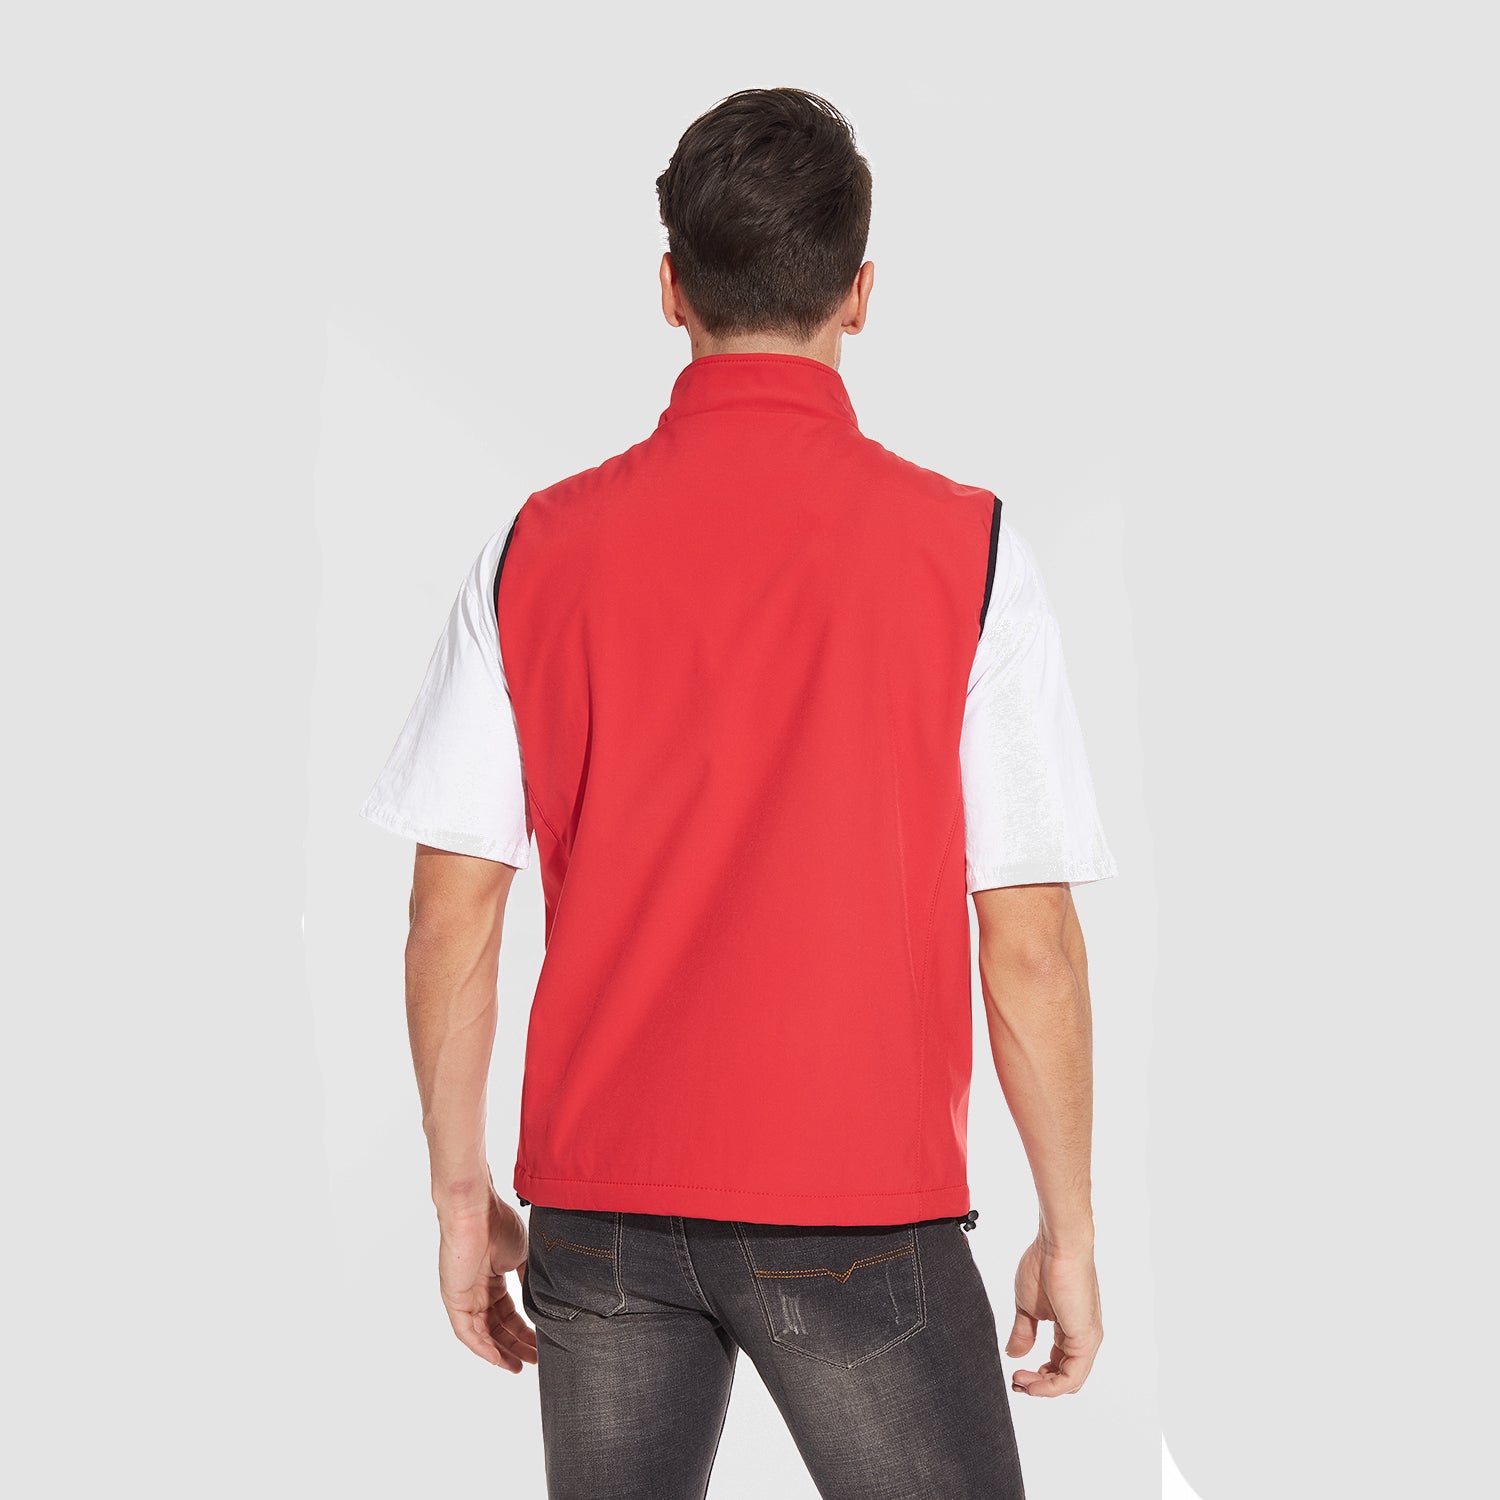 Men's Lightweight Vest Zip-up Sleeveless Jacket for Outdoors